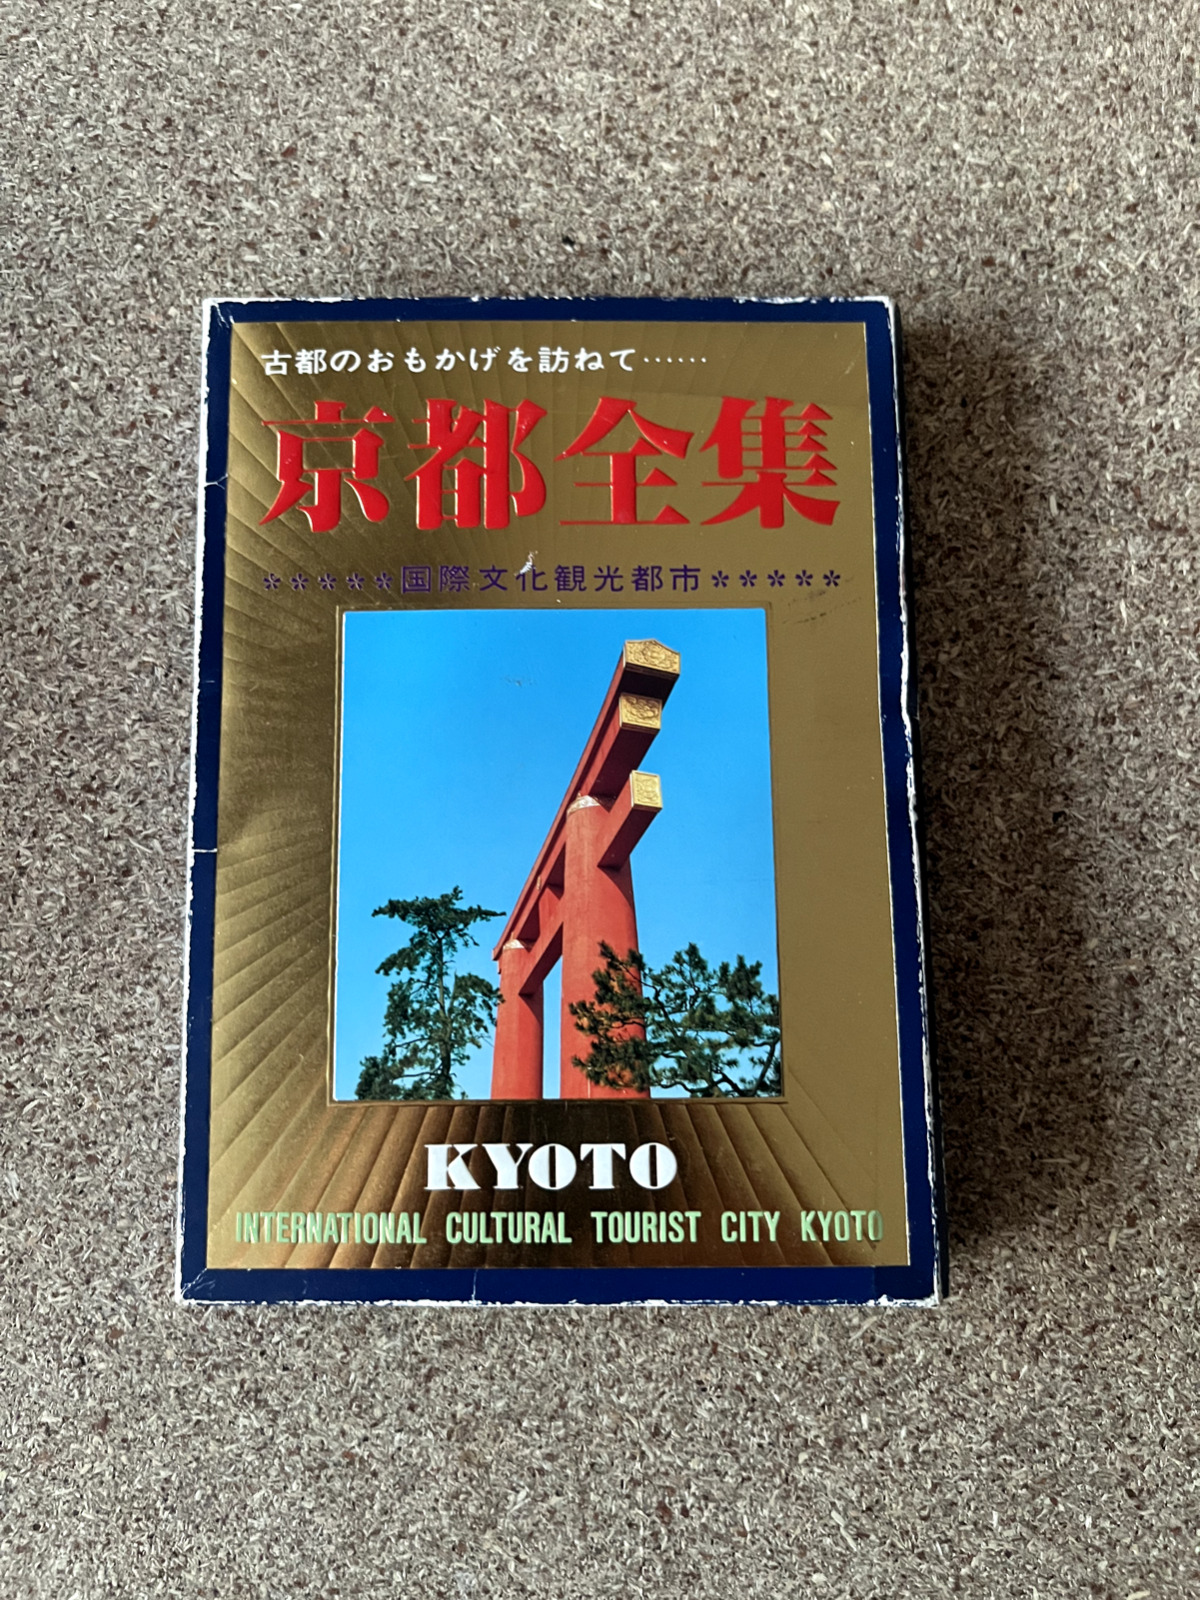 Kyoto Japan Cultural Tourist City Vintage Postcards Lot of 24